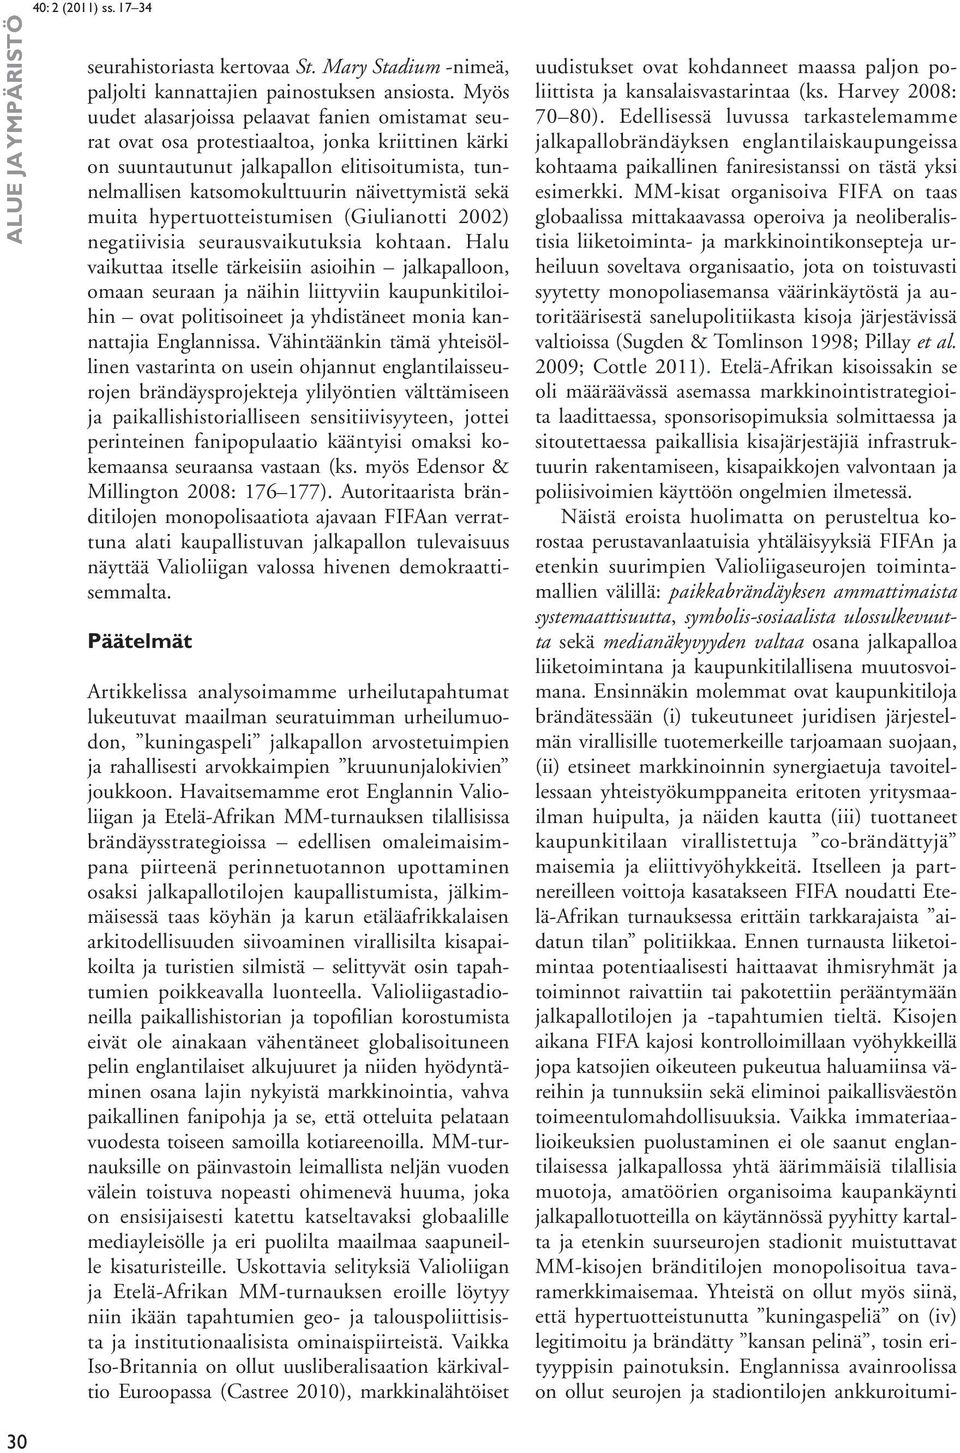 sekä muita hypertuotteistumisen (Giulianotti 2002) negatiivisia seurausvaikutuksia kohtaan.